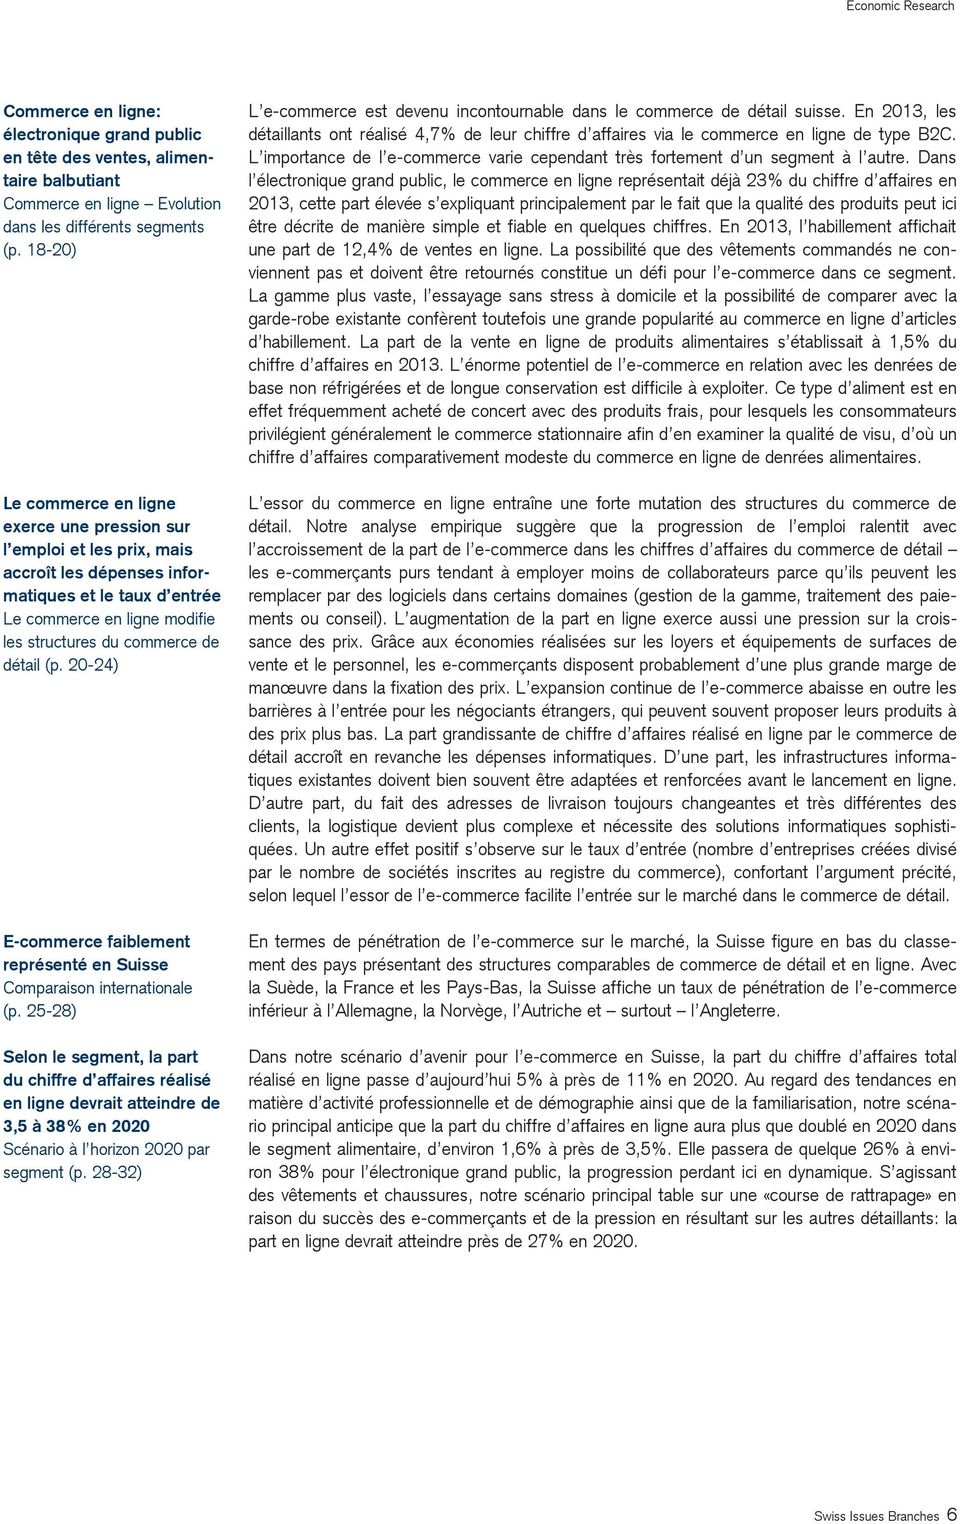 (p. 20-24) E-commerce faiblement représenté en Suisse Comparaison internationale (p.